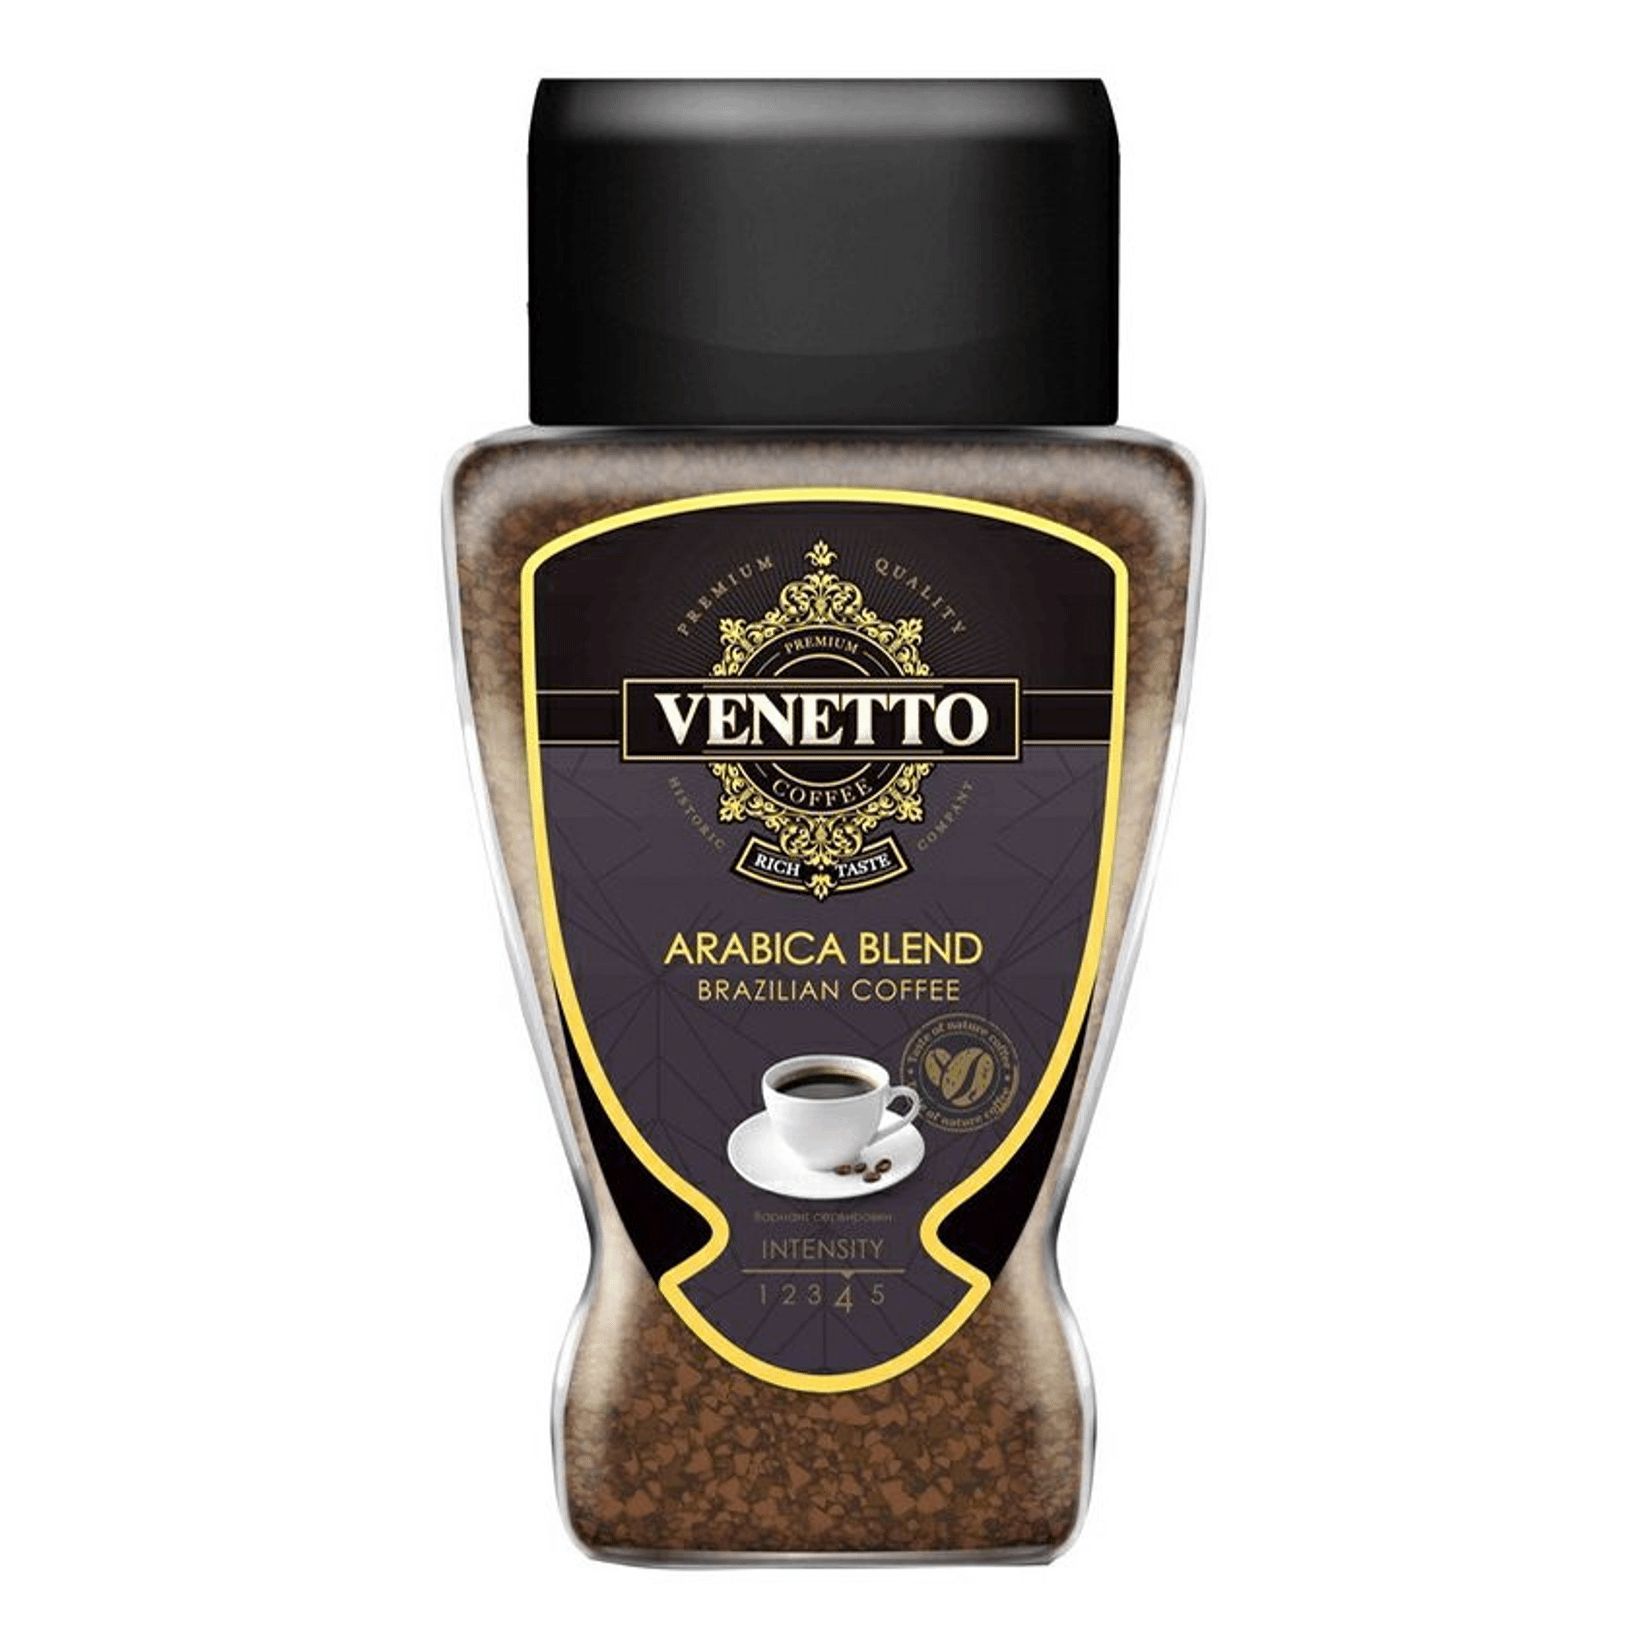 Кофе venetto arabica blend. Venetto Arabica Blend 190г. Venetto кофе растворимый / 190 г. Venetto Arabica Blend Brazilian.